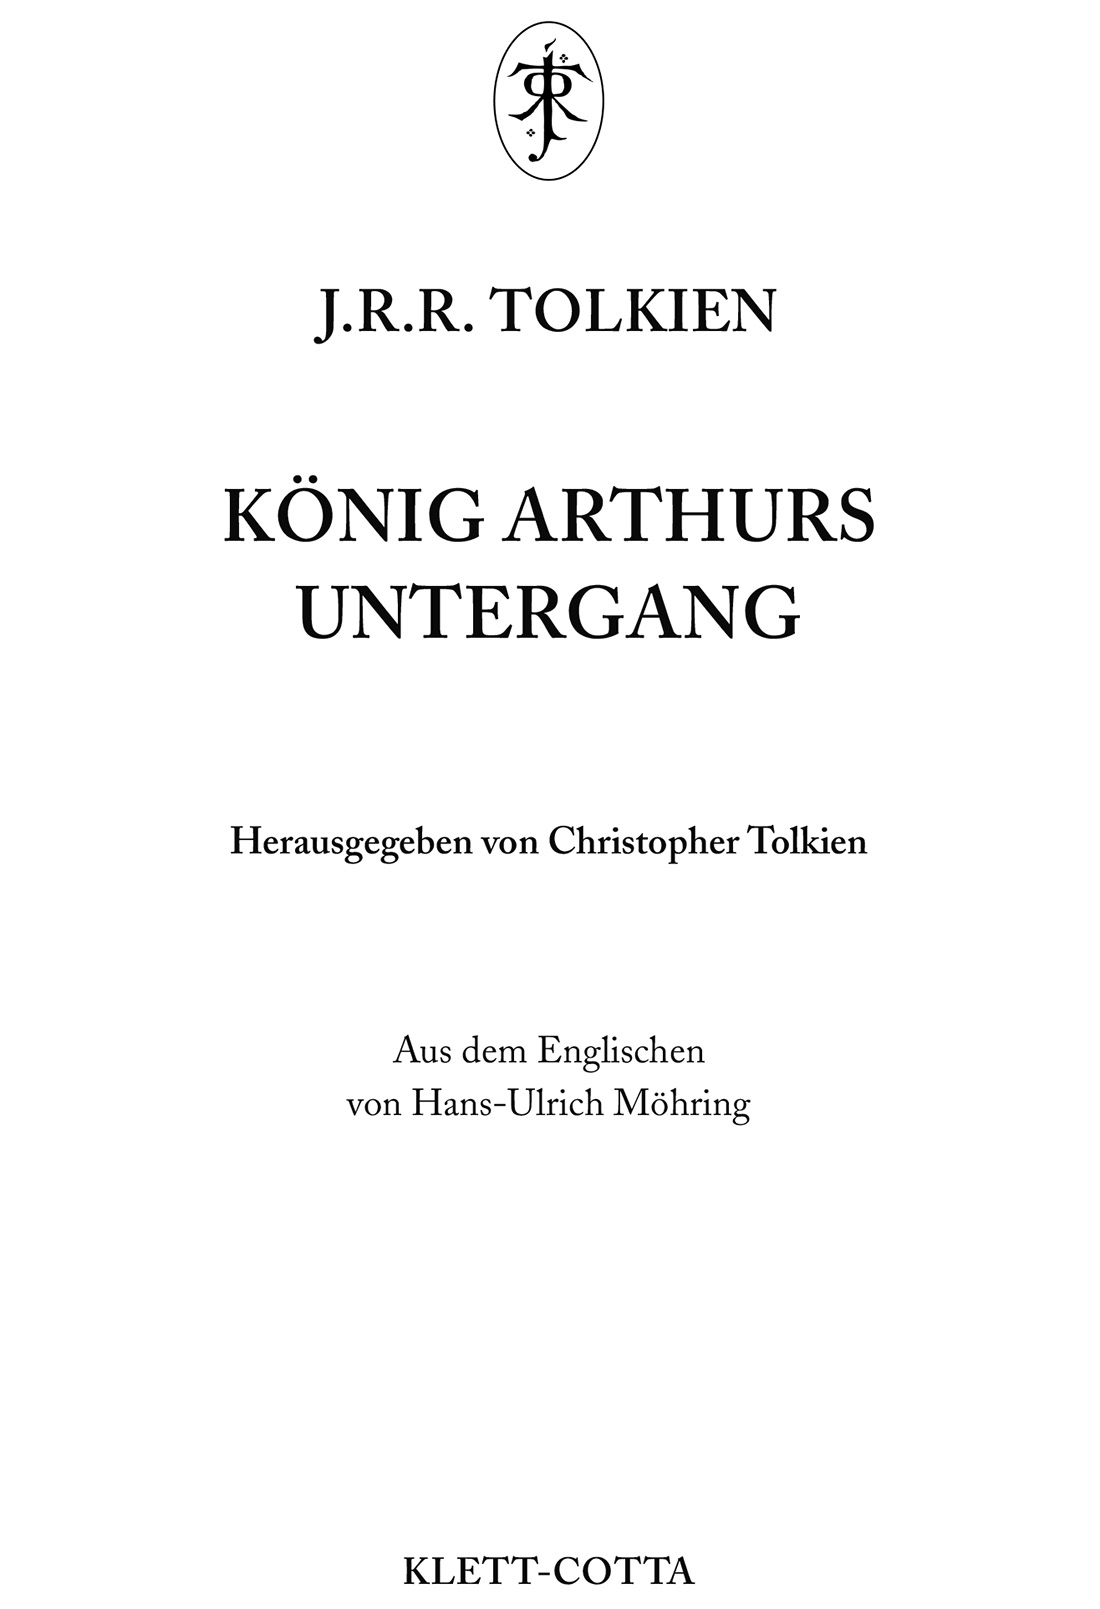 König Arthurs Untergang, Herausgegeben von Christopher Tolkien, Aus dem Englischen von Hans-Ulrich Möhring, KLETT-COTTA